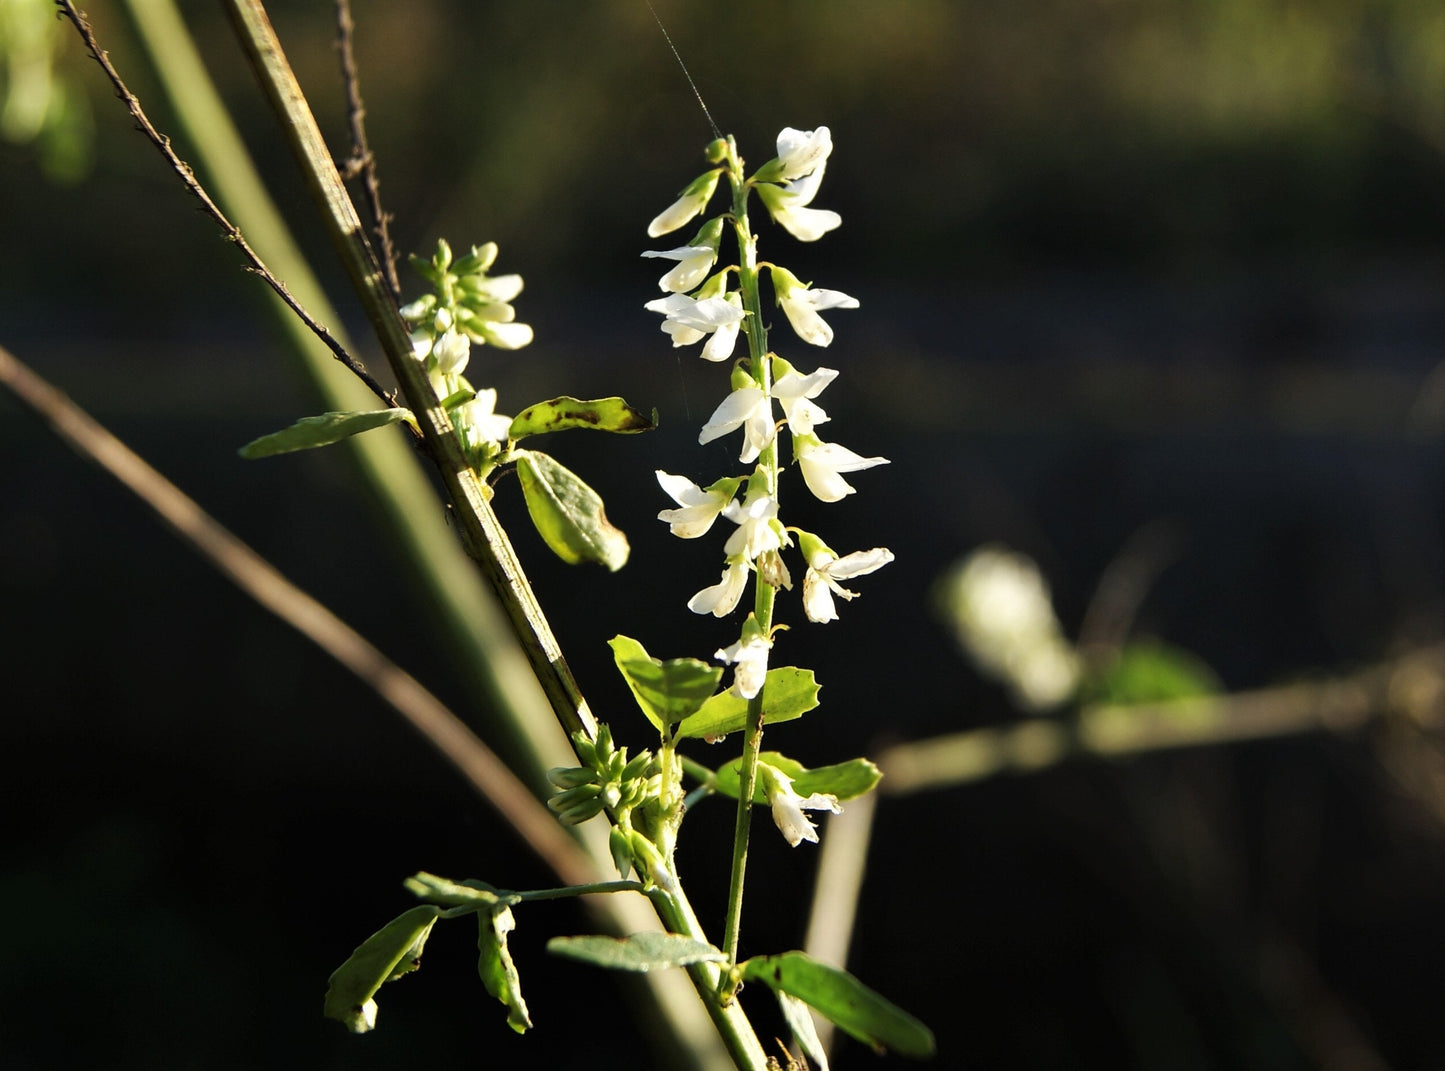 1500 WHITE Blossom SWEET CLOVER Melilotus Officinalis Alba Albus Sweetclover Honey Clover Flower Seeds